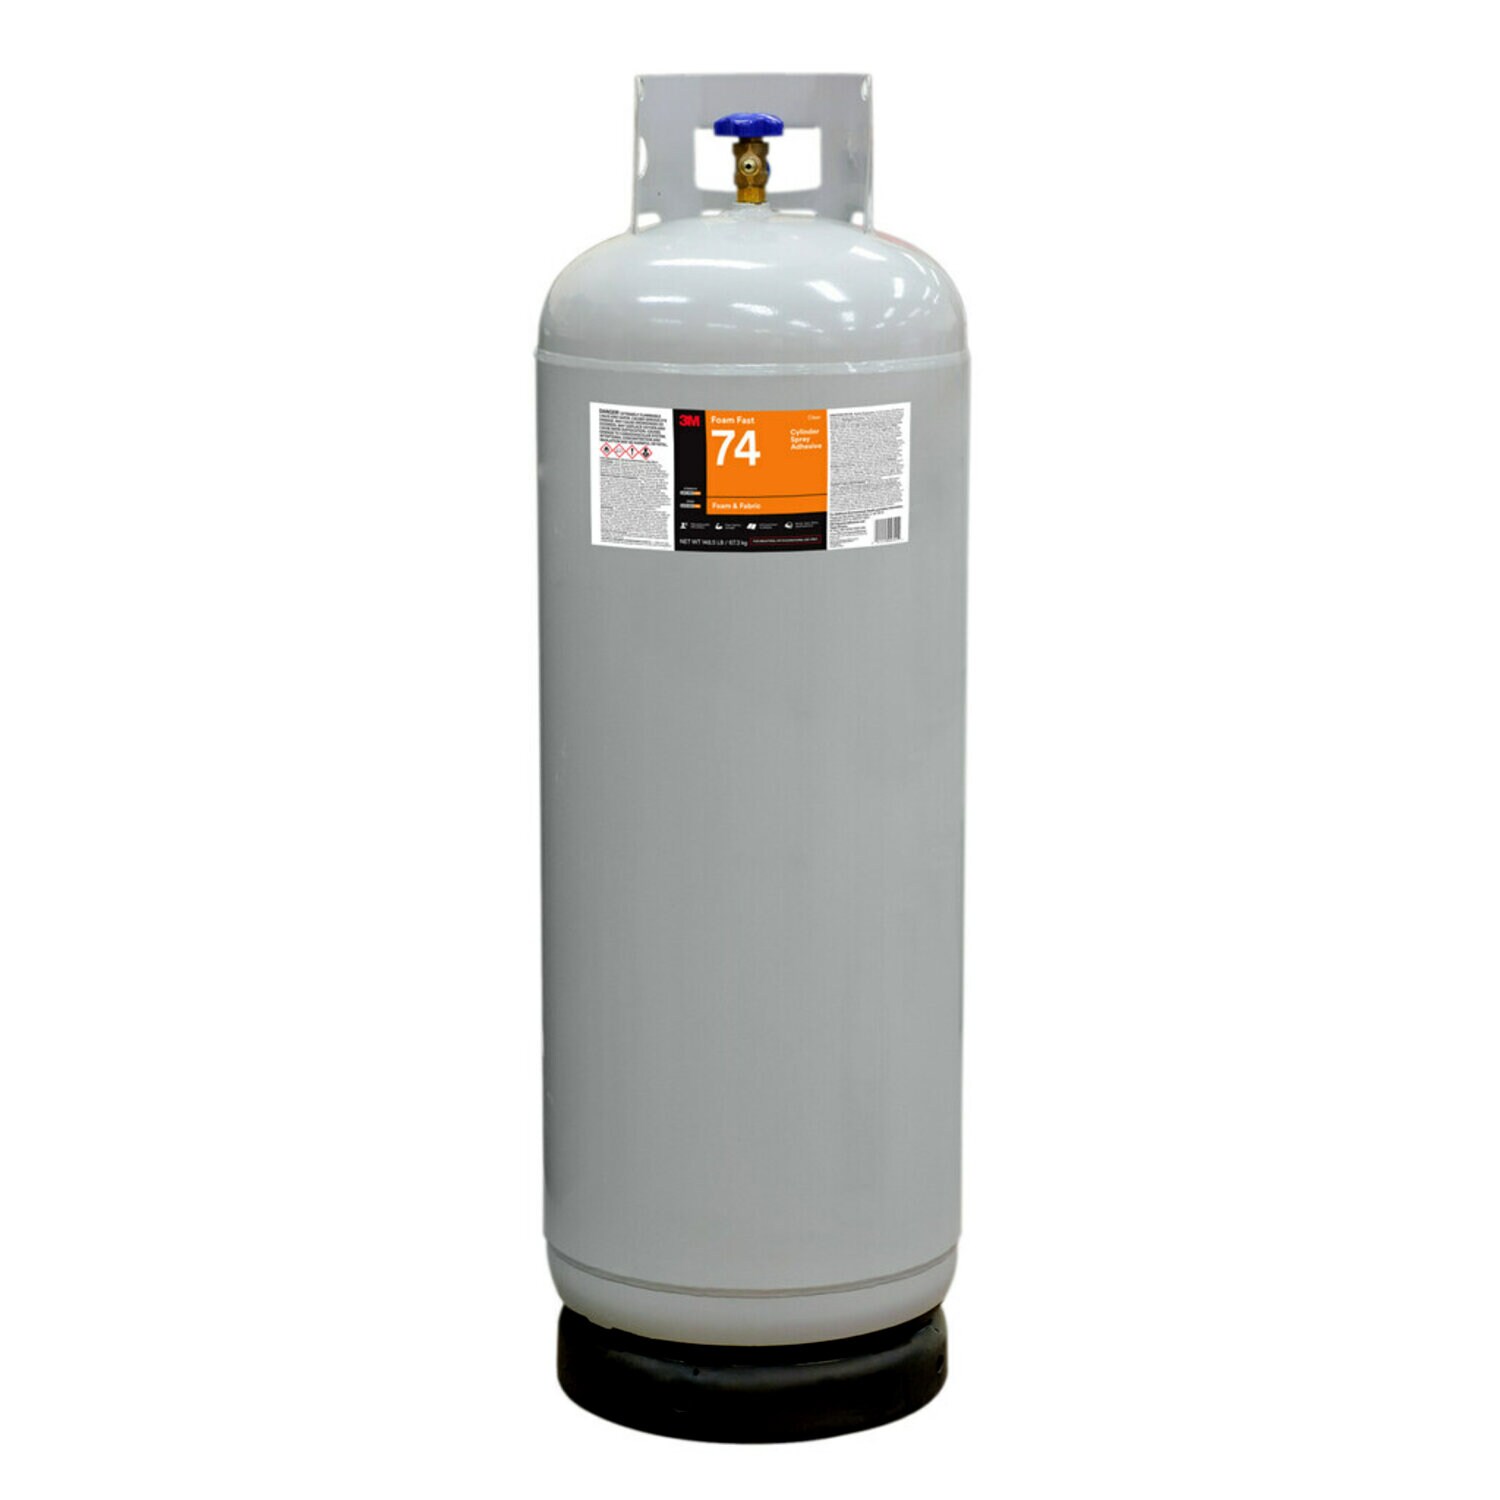 7010299400 - 3M Foam Fast 74 Cylinder Spray Adhesive, Clear, Intermediate Cylinder
(Net Wt 148.5 lb)